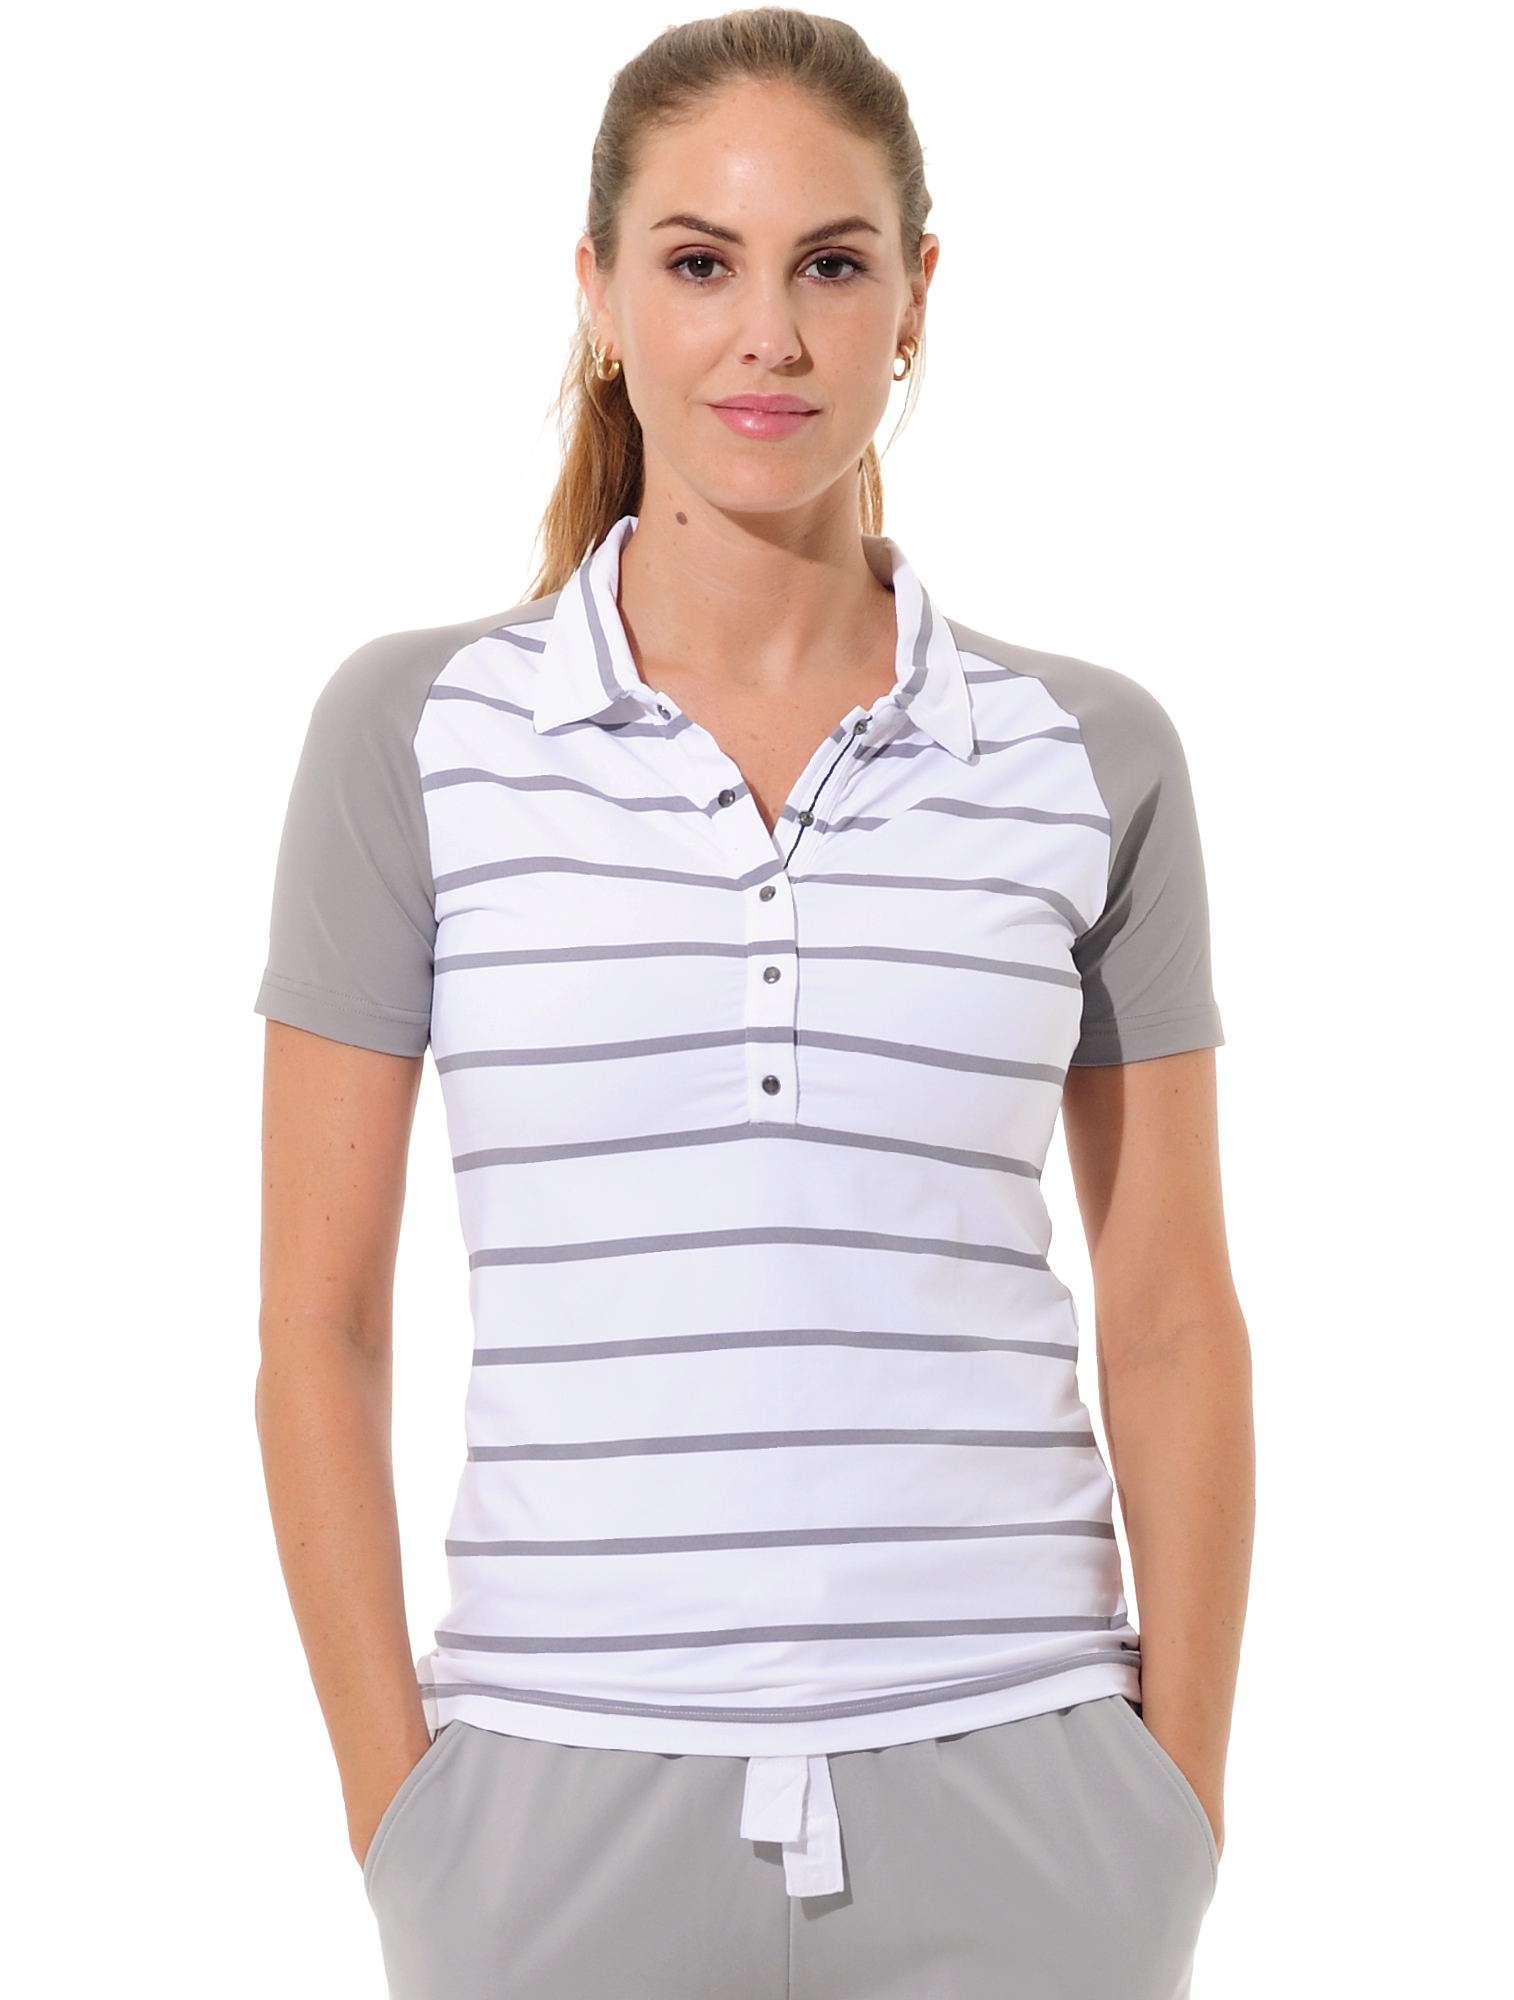 Sailor Print Golf Poloshirt grey